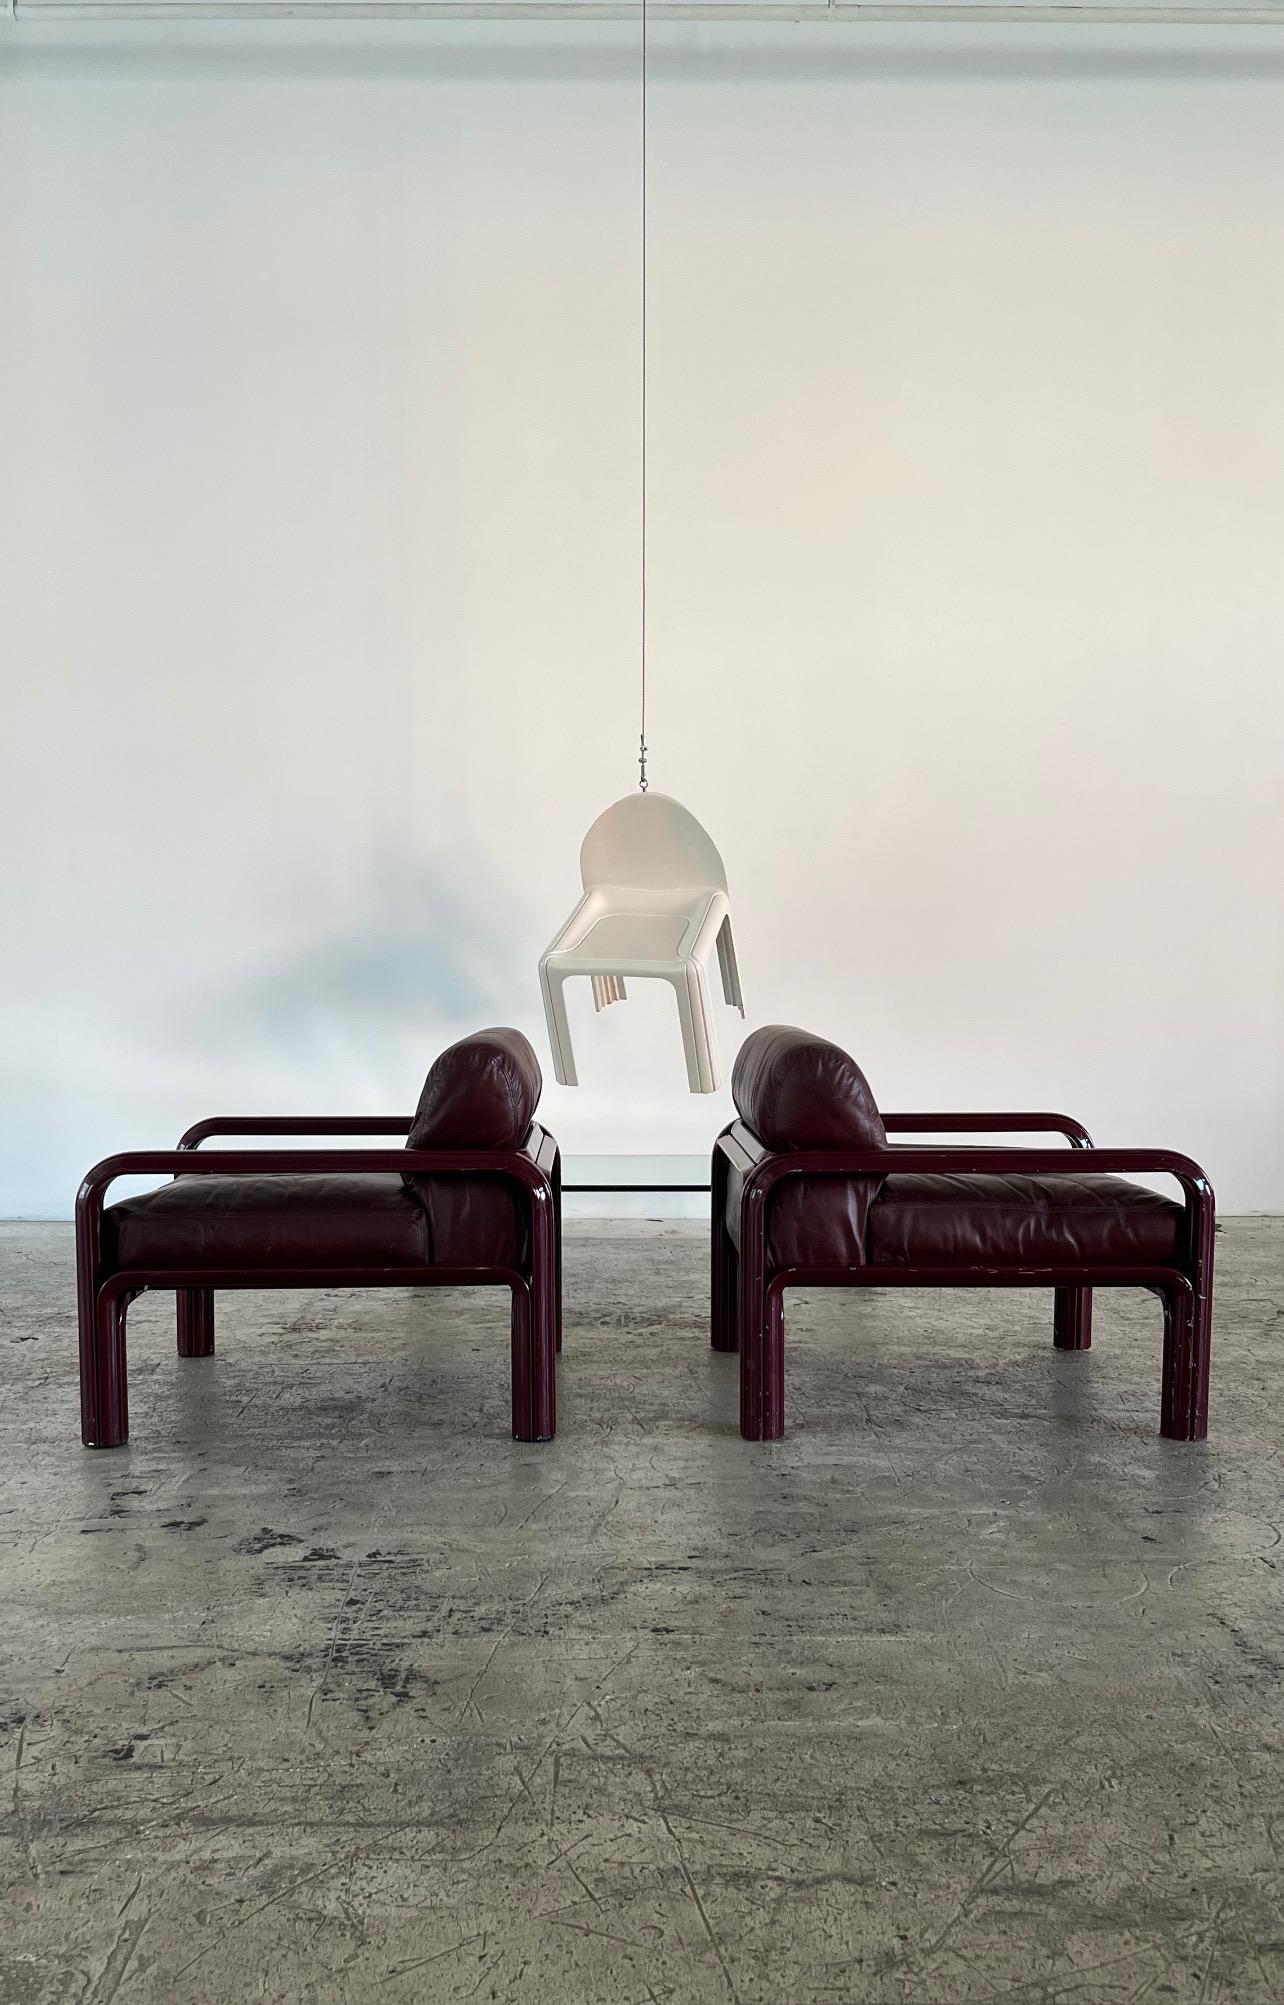 Ce fauteuil a été conçu par Gae Aulenti pour Knoll International en 1974. Il fait partie de la Collection Aulenti, avec les canapés et les tables basses assortis. Cette chaise est composée d'un corps en métal cannelé émaillé marron et d'un